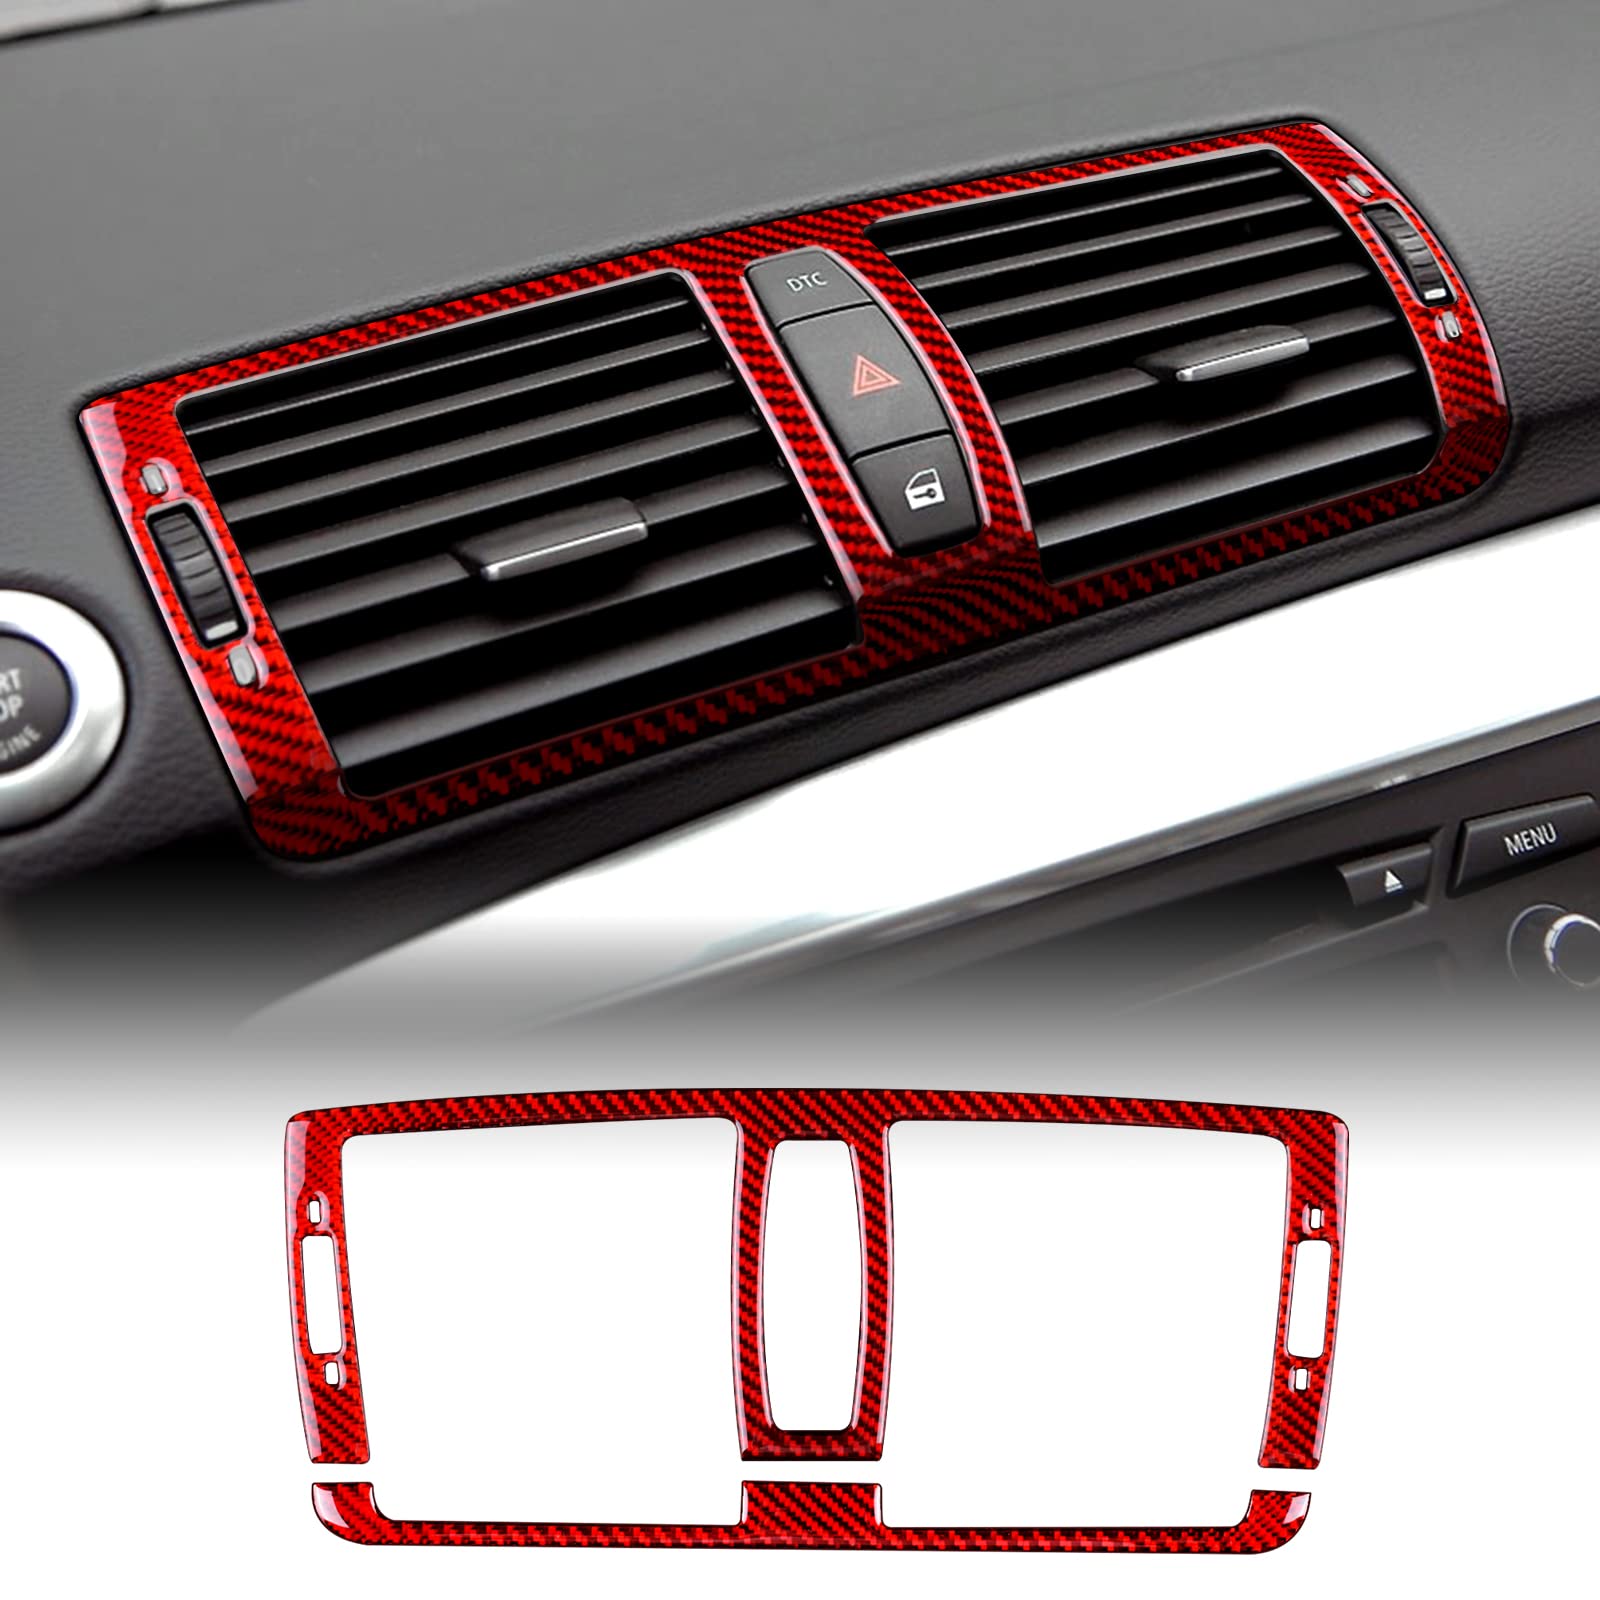 KUNGKIC Auto Zentralsteuerung Luftauslassrahmen Entlüftung Panel Kohlefaser Aufkleber Dekorative Innenbereich Compatible with BMW 1 Serie E81 E82 E87 E88 2008-2013 Zubehör (Rot) von KUNGKIC